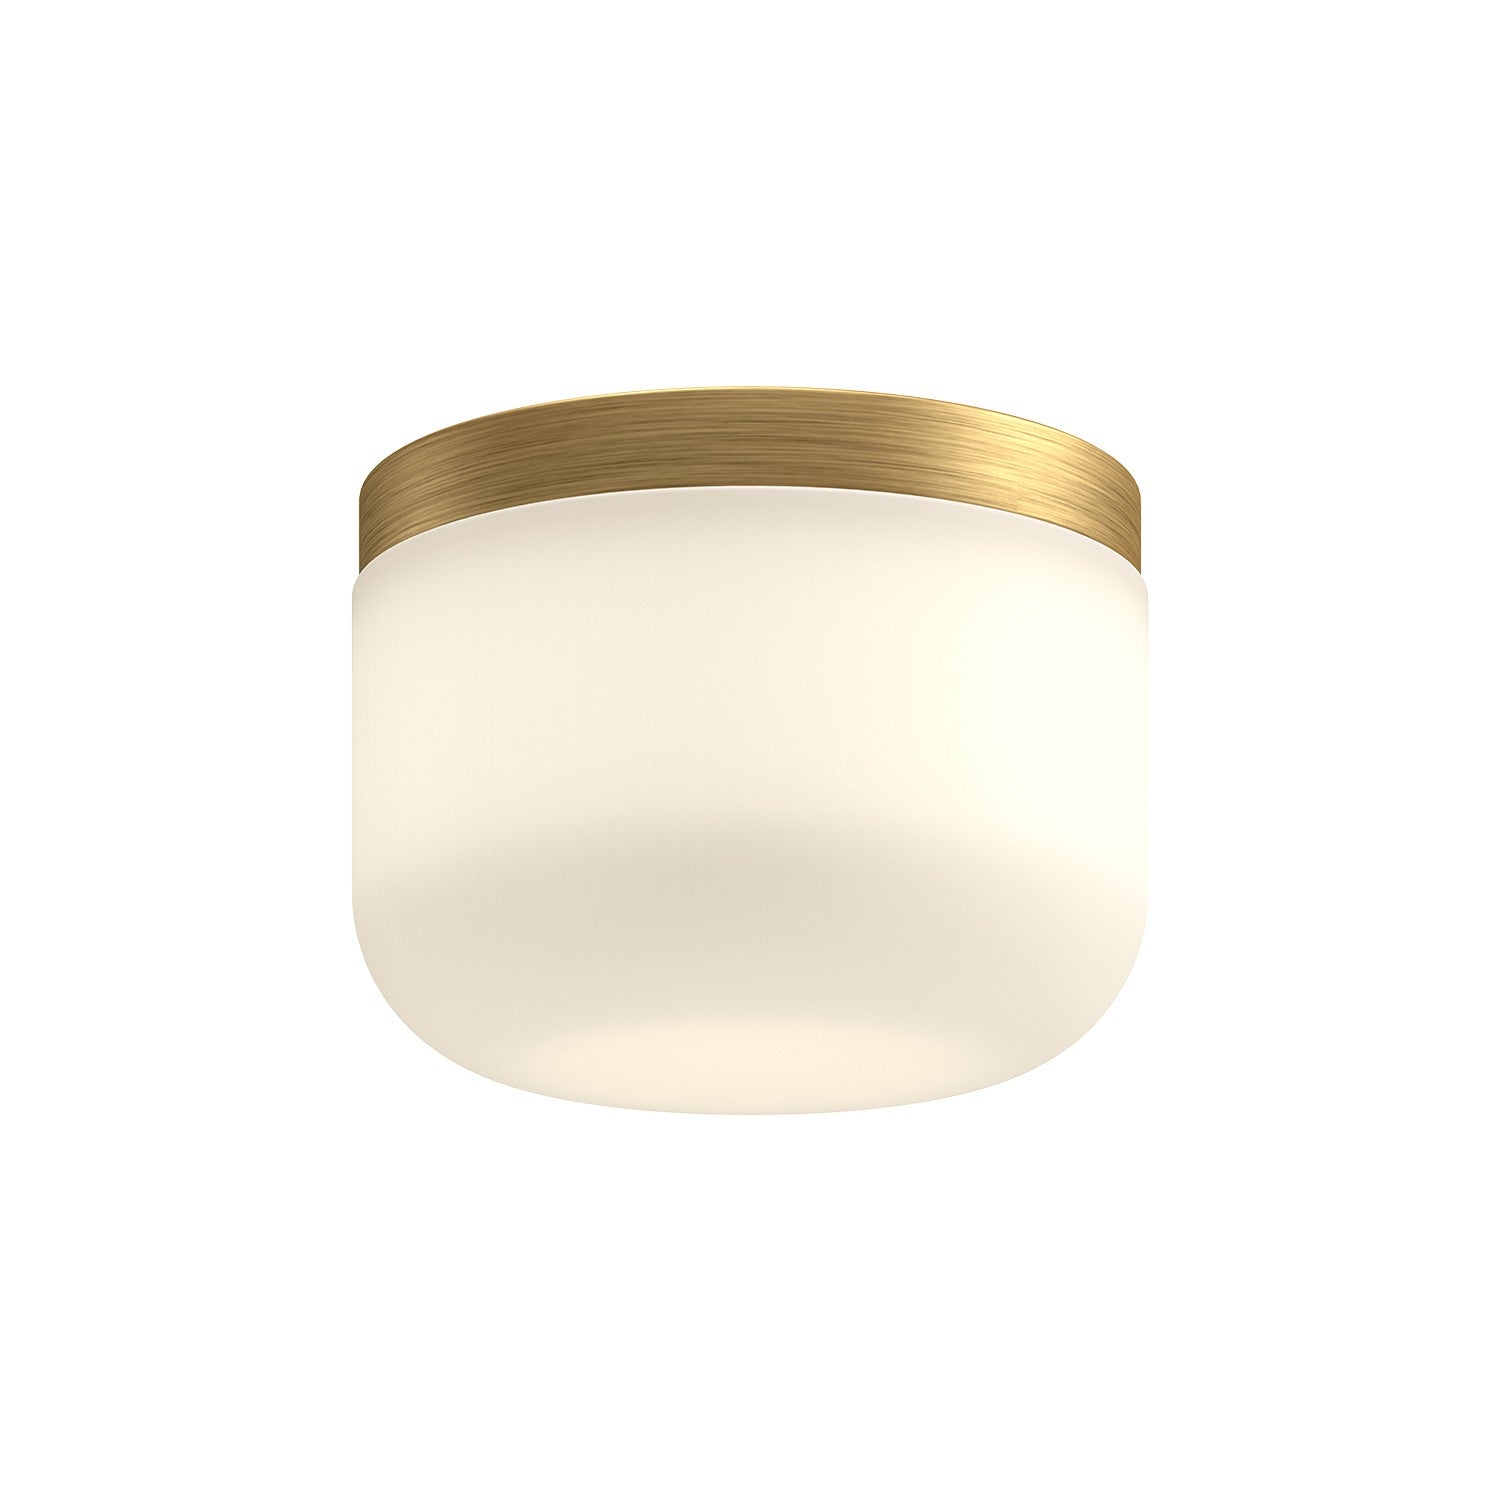 Kuzco Lighting - FM53005-BG/OP - LED Flush Mount - Mel - Brushed Gold/Opal Glass